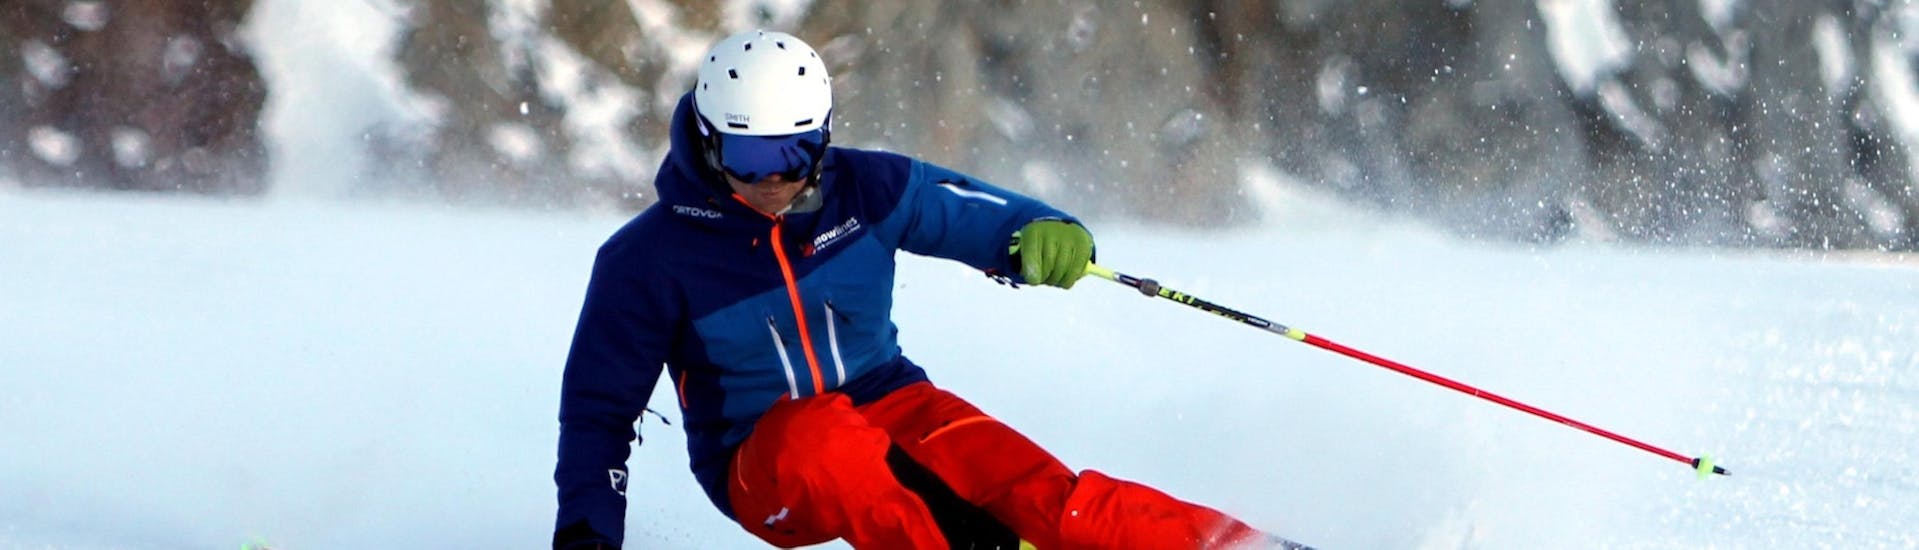 Cours particulier de ski Adultes pour Tous niveaux avec Skischule SNOWLINES Sölden - Hero image